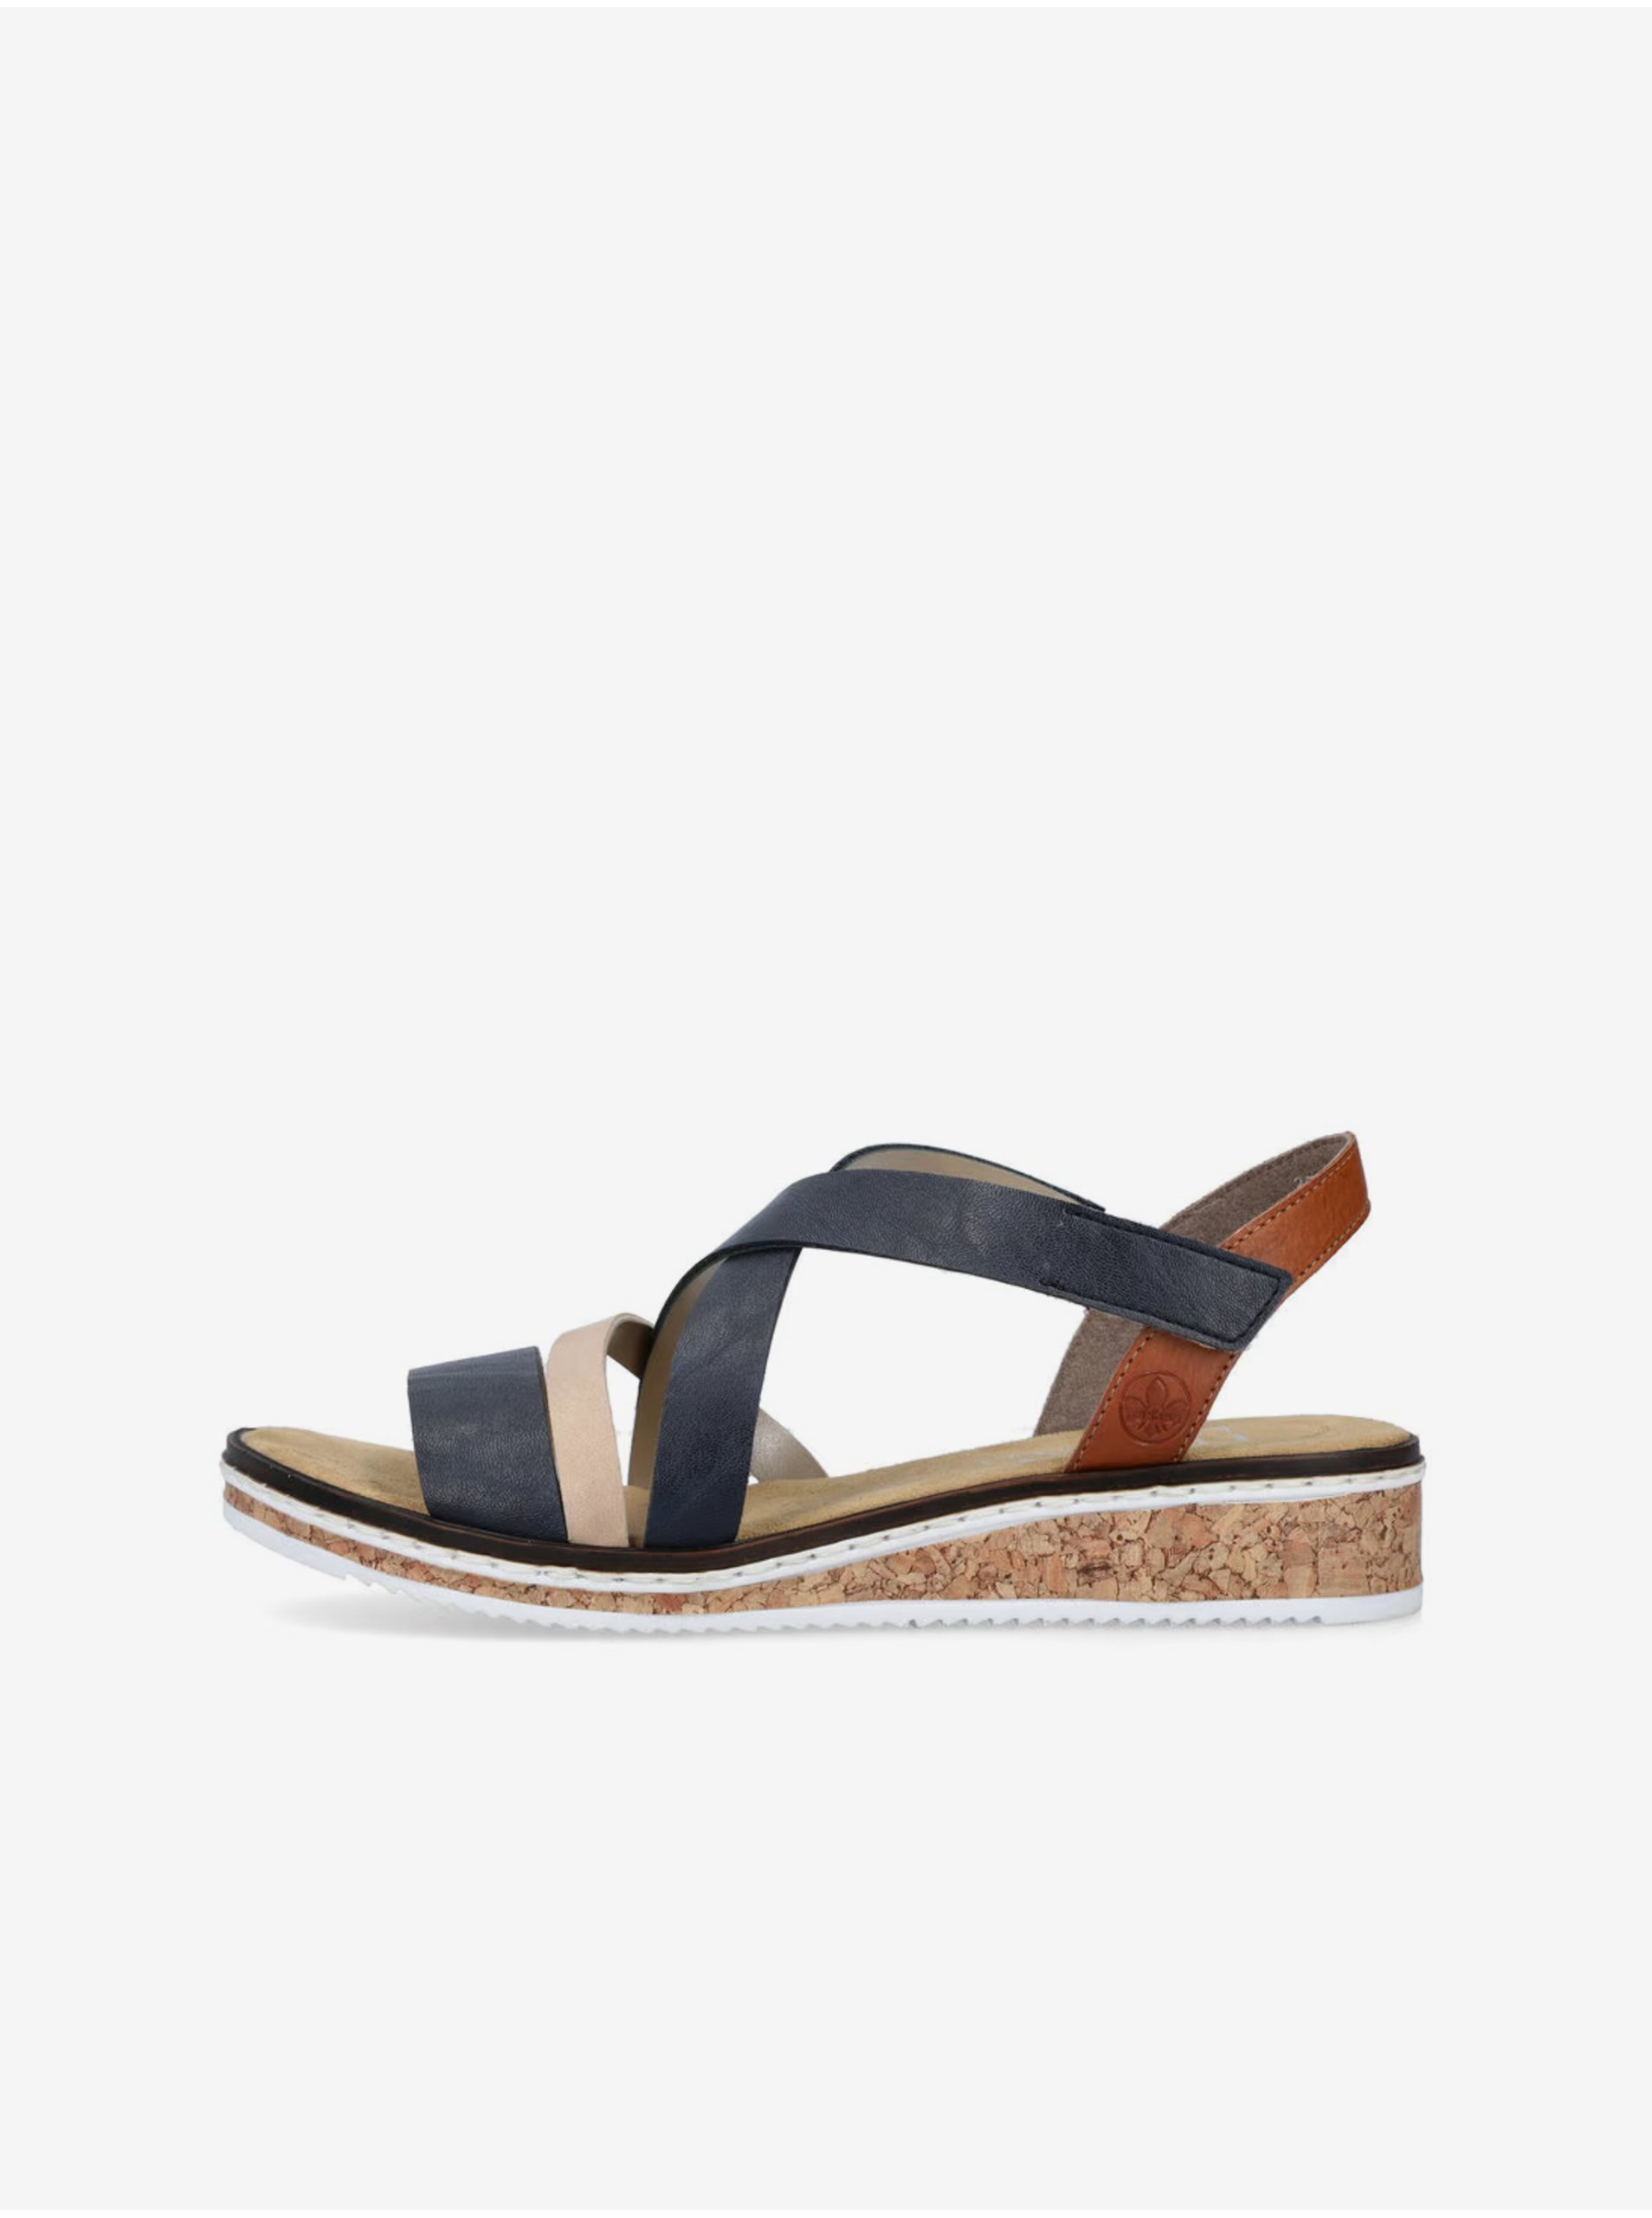 E-shop Sandále pre ženy Rieker - tmavomodrá, hnedá, béžová